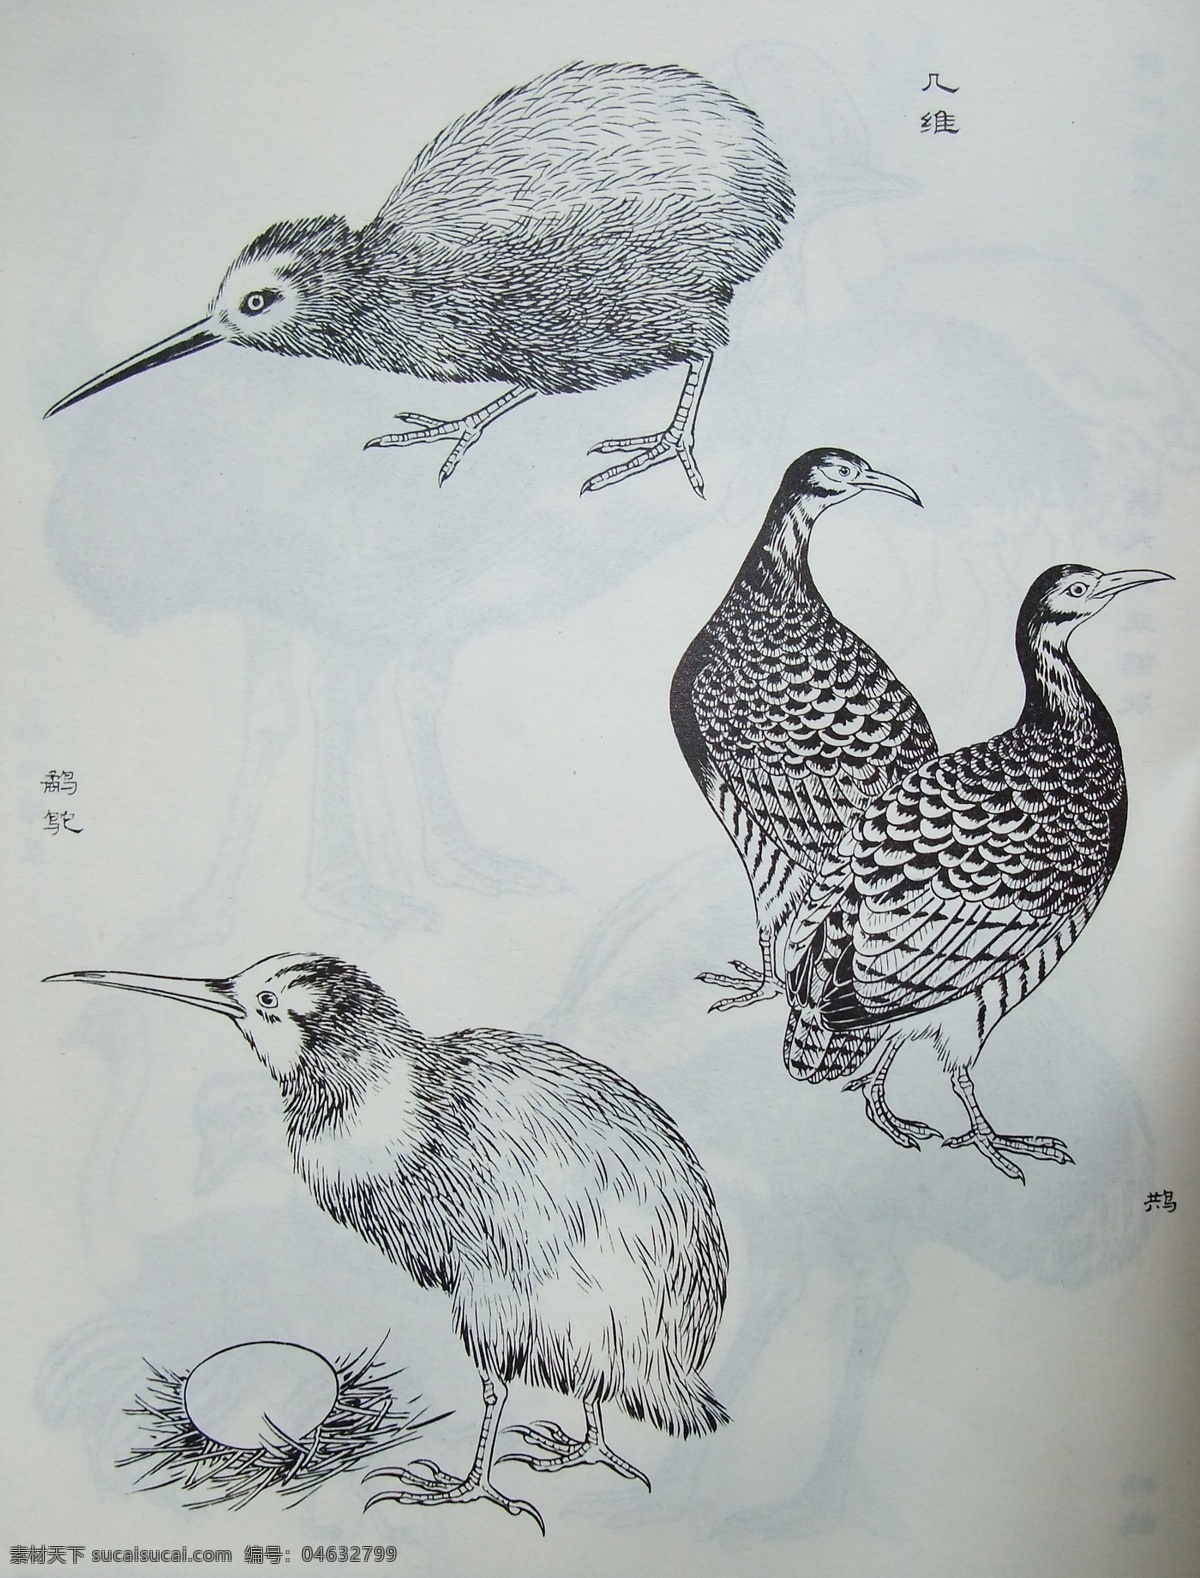 鸟类工笔画 小鸟 写实 教程实例 黑白 工笔画 鸟类 生物世界